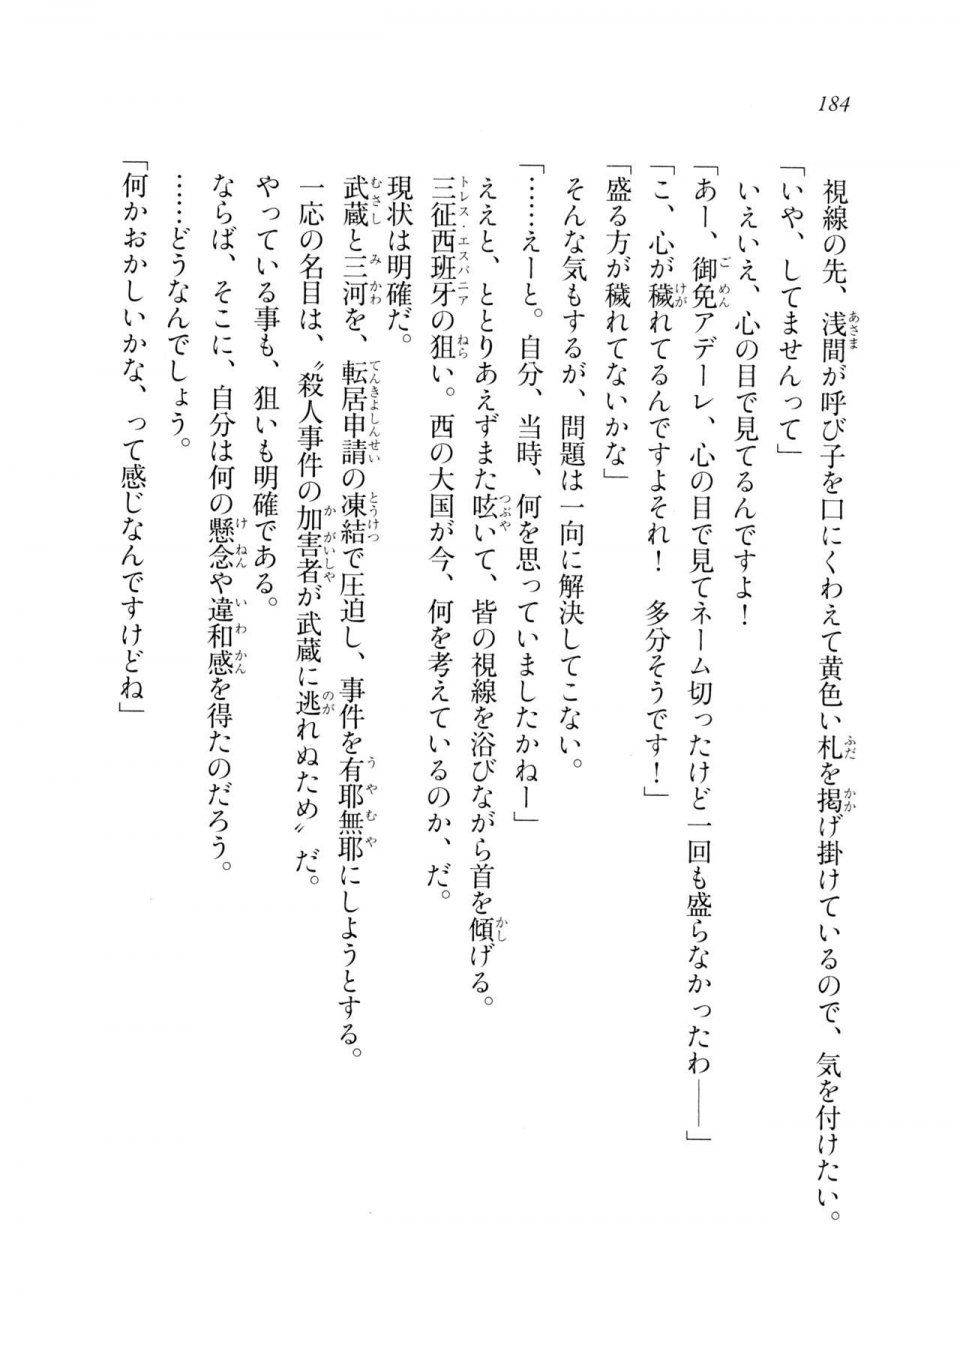 Kyoukai Senjou no Horizon LN Sidestory Vol 2 - Photo #182